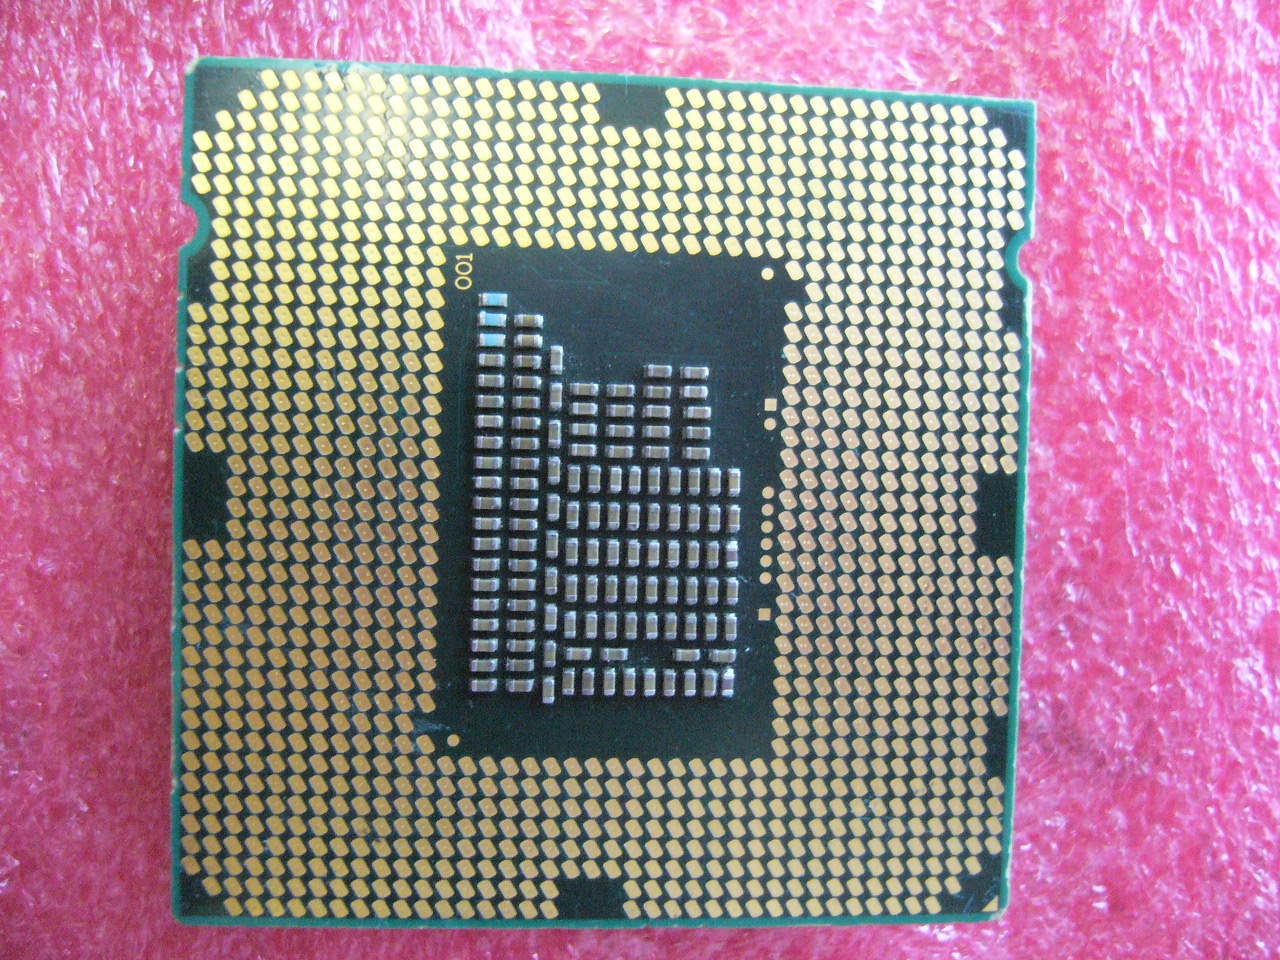 QTY 1x INTEL CPU G850 2.9GHZ/3MB LGA1155 SR05Q - zum Schließen ins Bild klicken